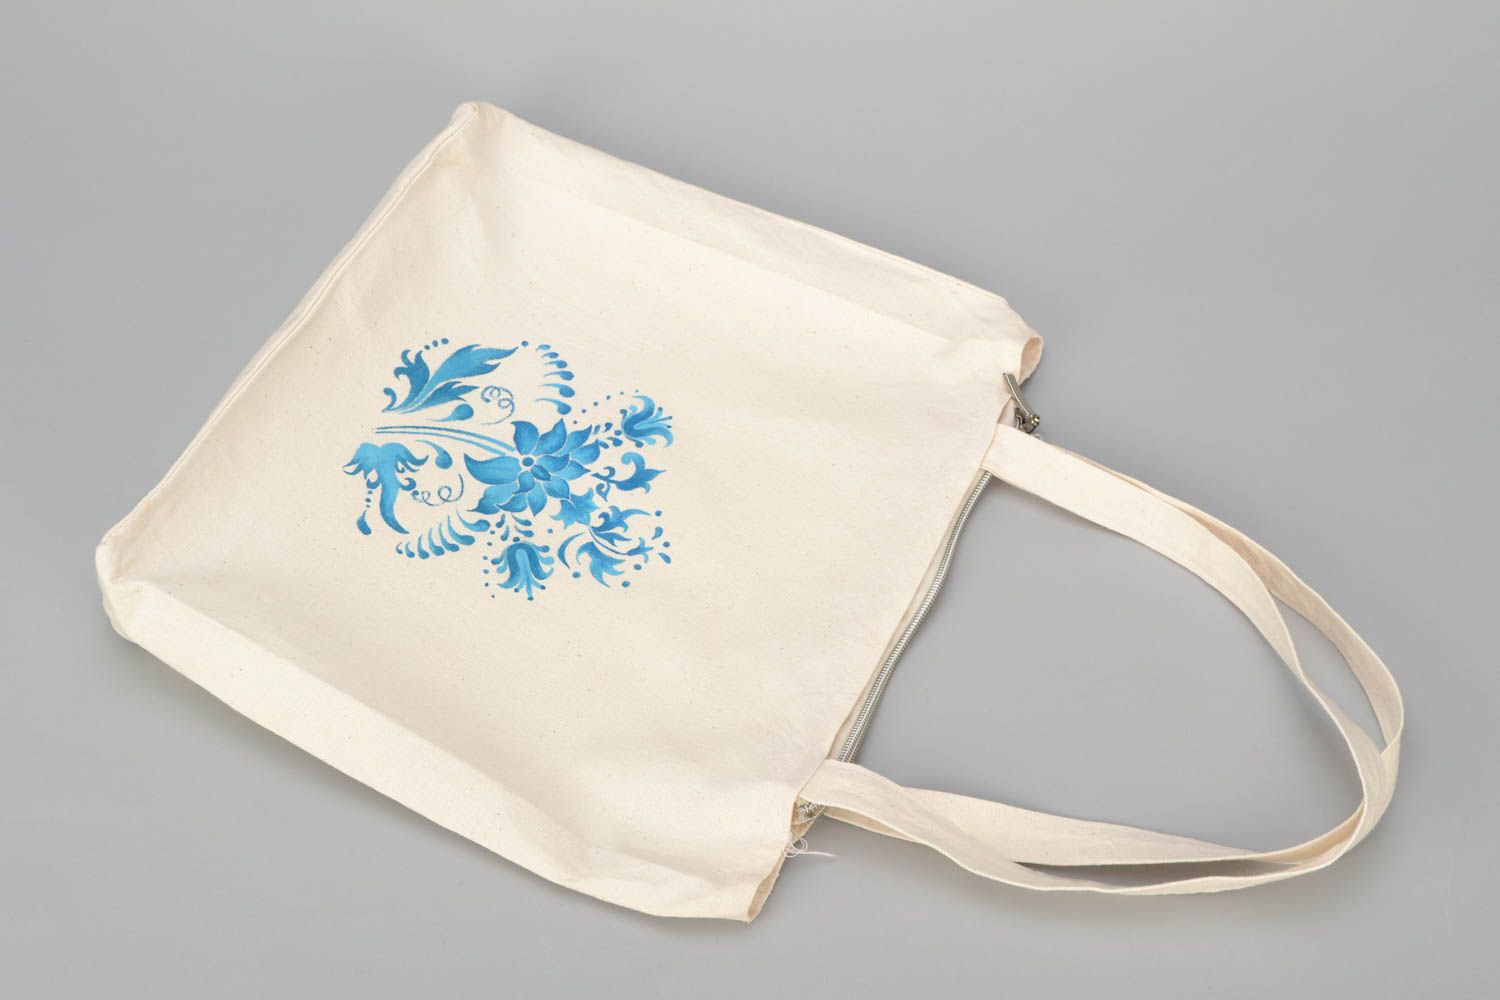 Textil Handtasche in Weiß mit blauen Blumen foto 3